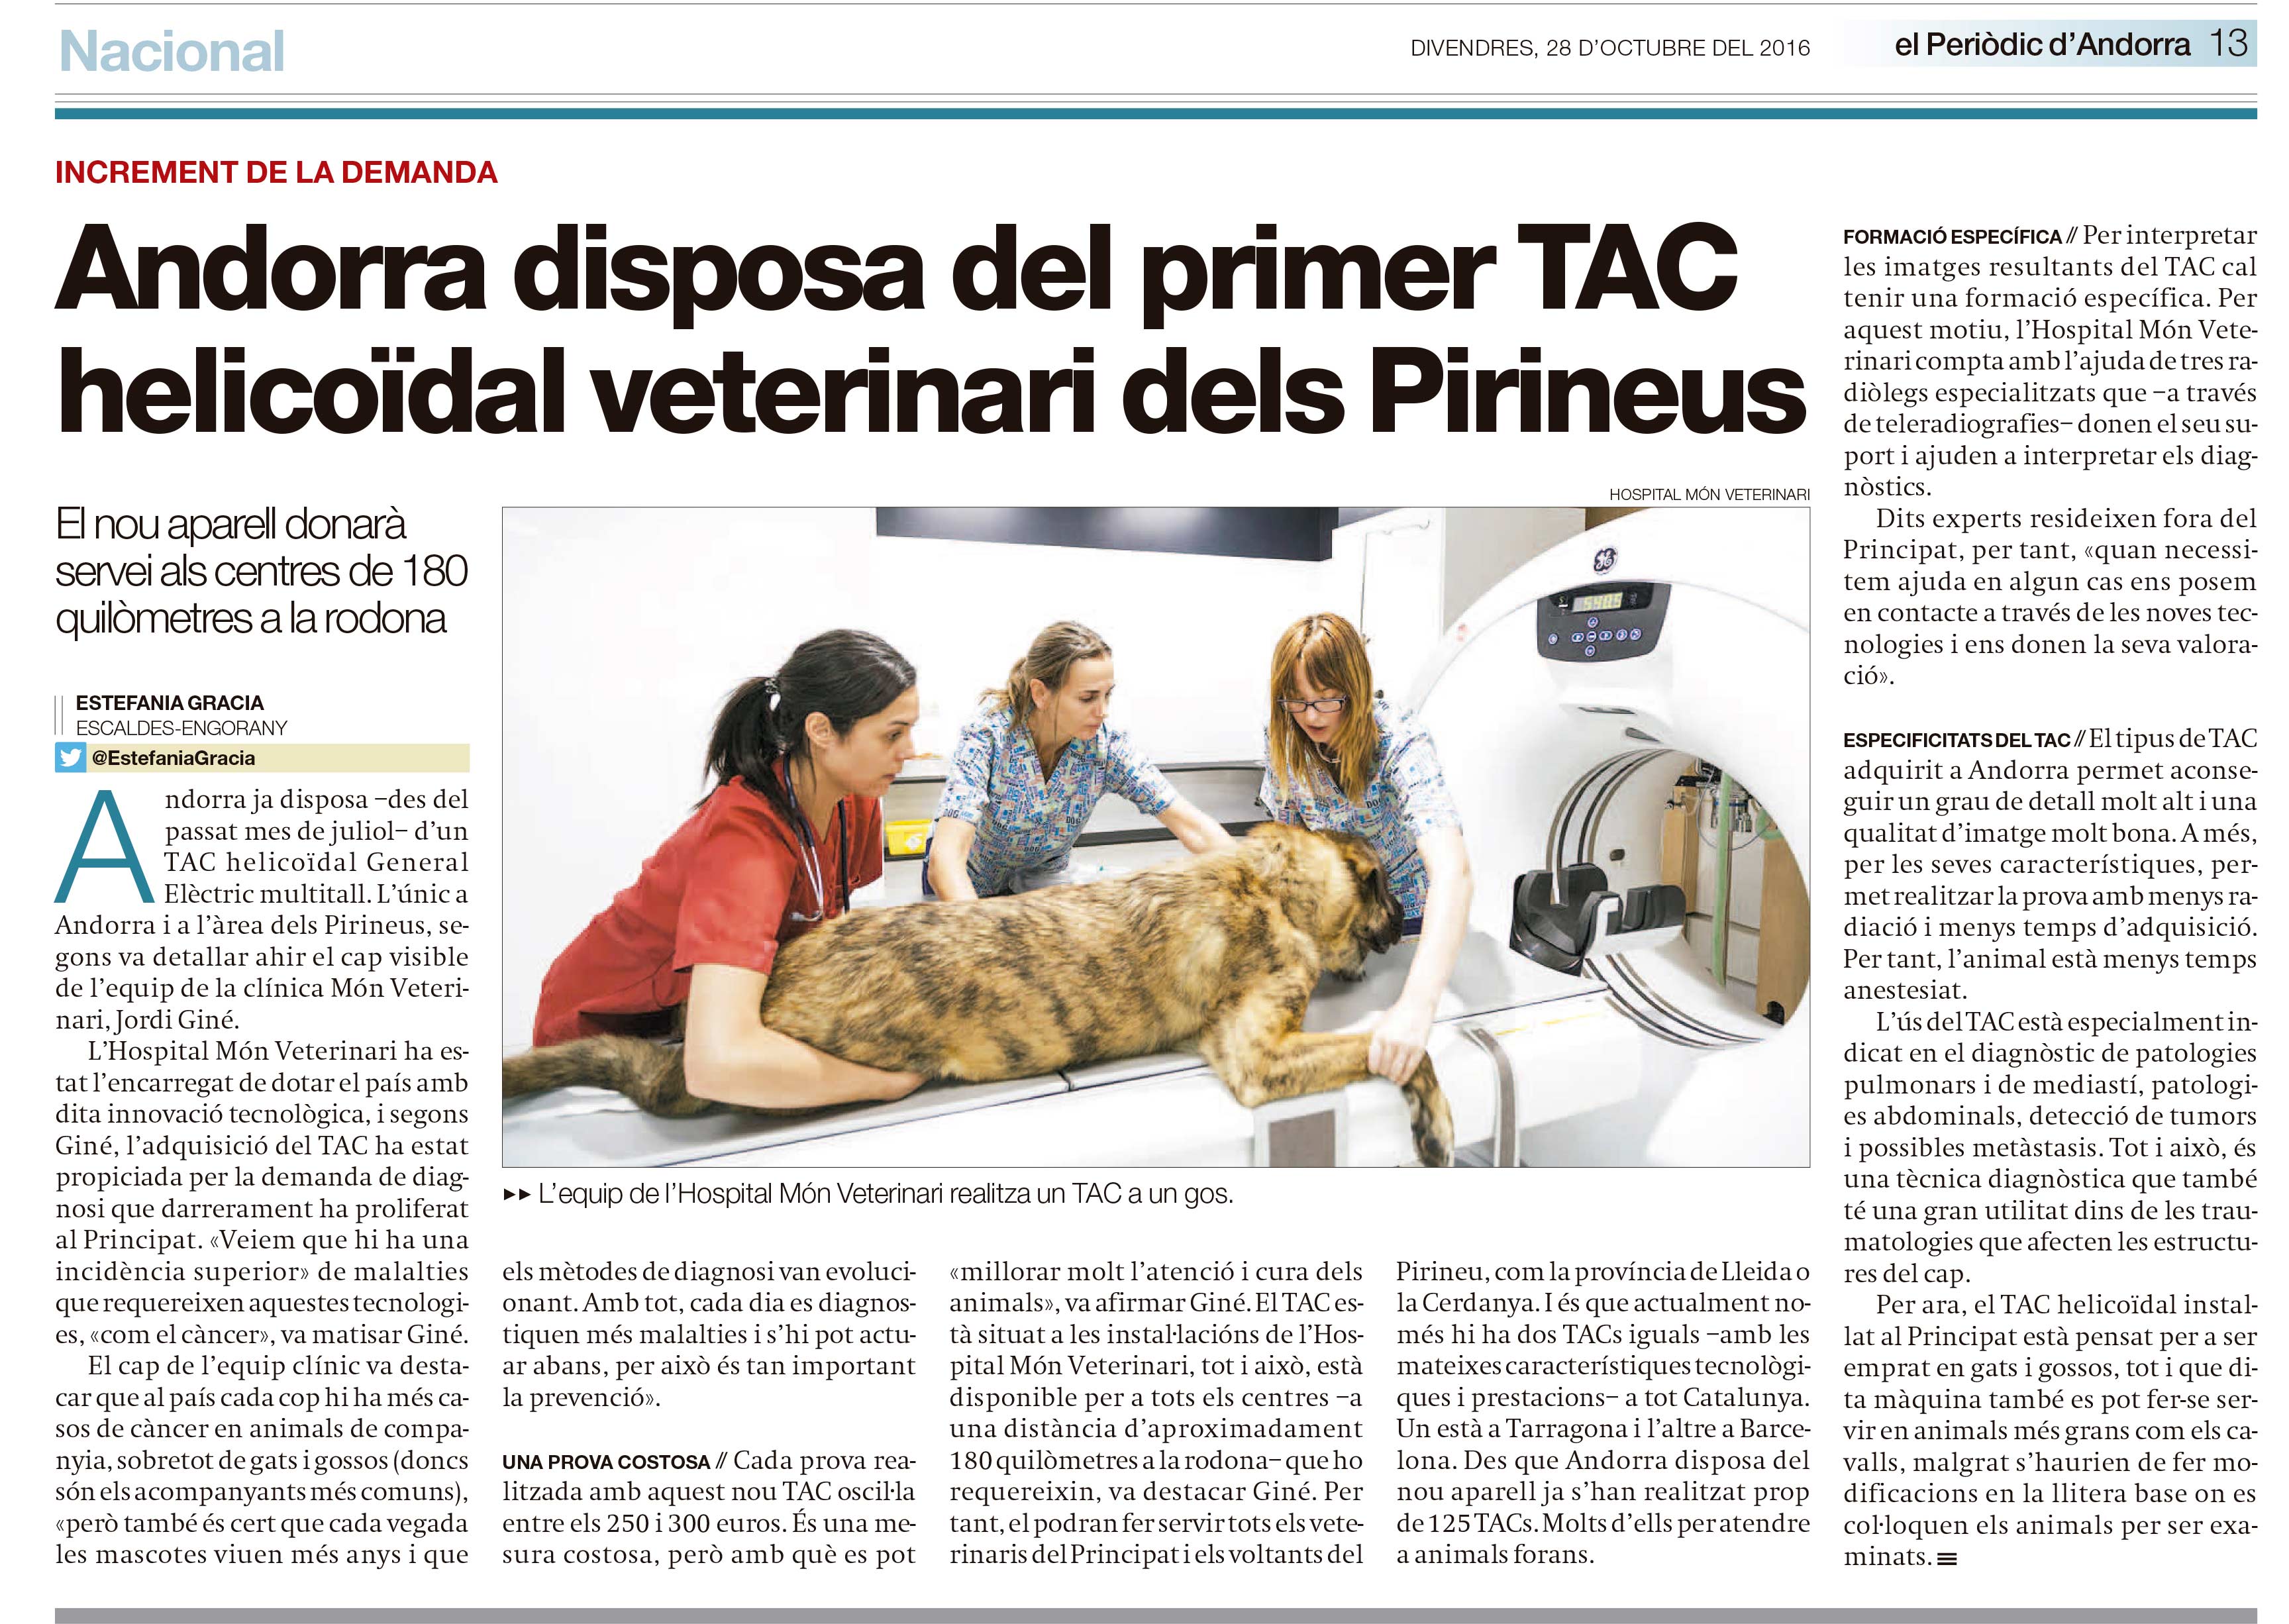 Andorra disposa del primer TAC helicoïdal veterinari dels Pirineus